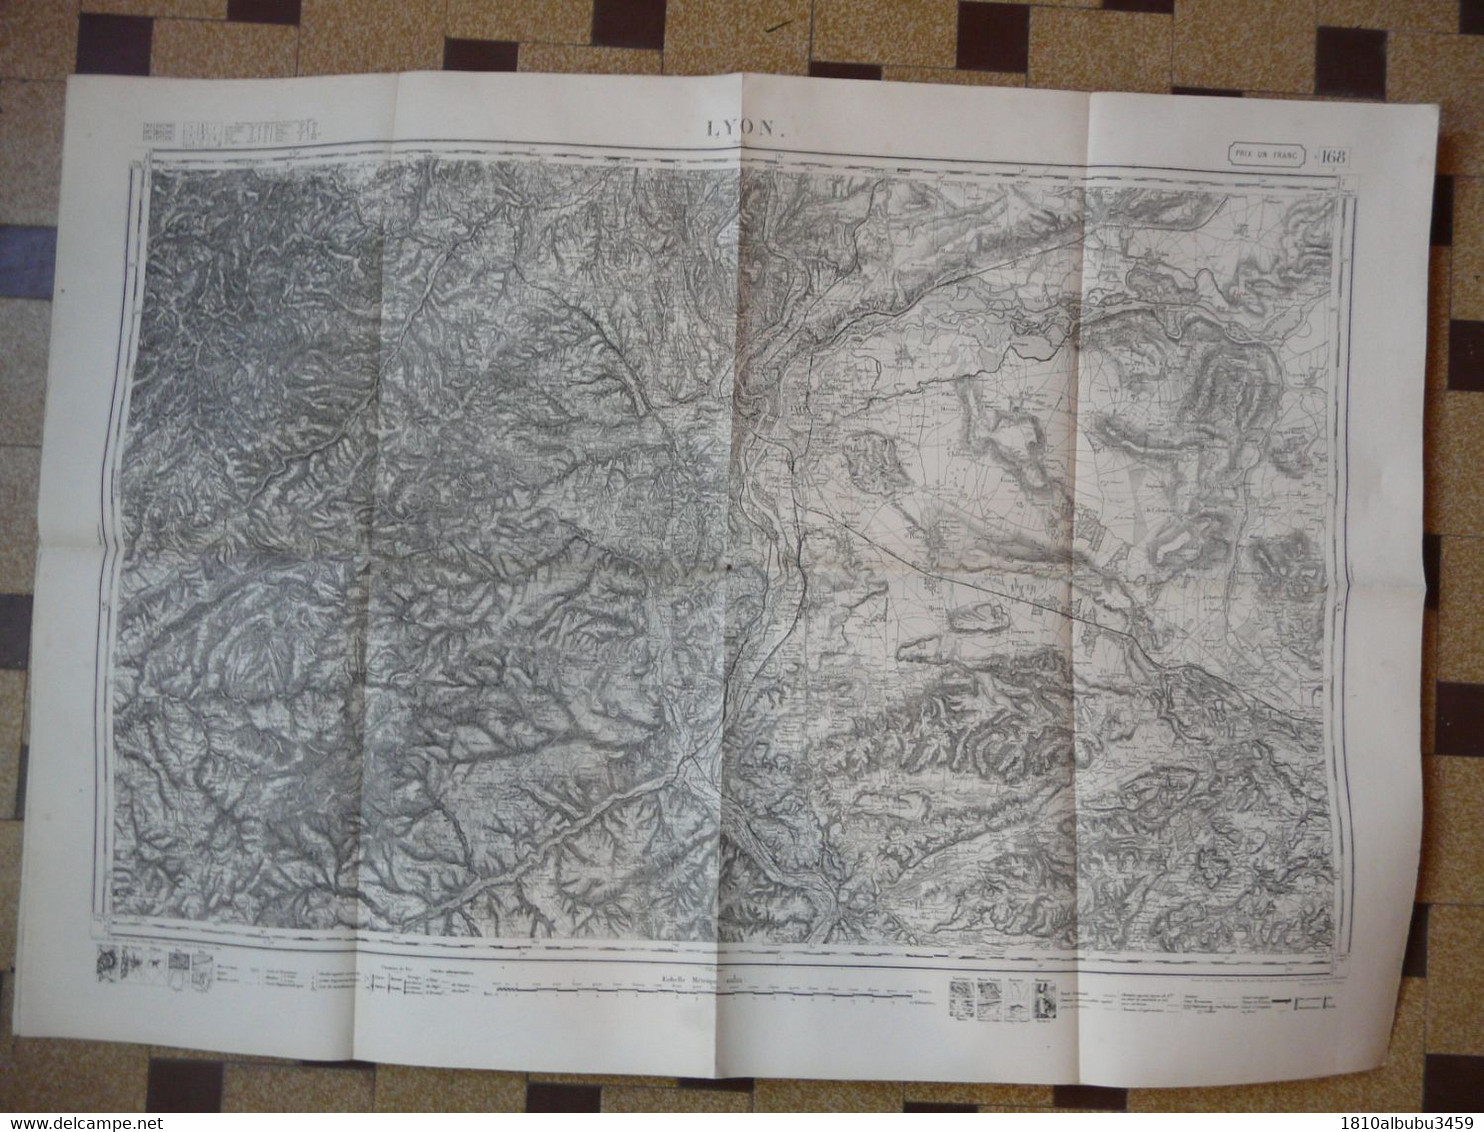 CARTE TOPOGRAPHIQUE LYON : Ech. Métrique 1/80000 - Levée Par Les Officiers D'Etat Major En 1841 (92 X 64 Cm) - Cartes Topographiques